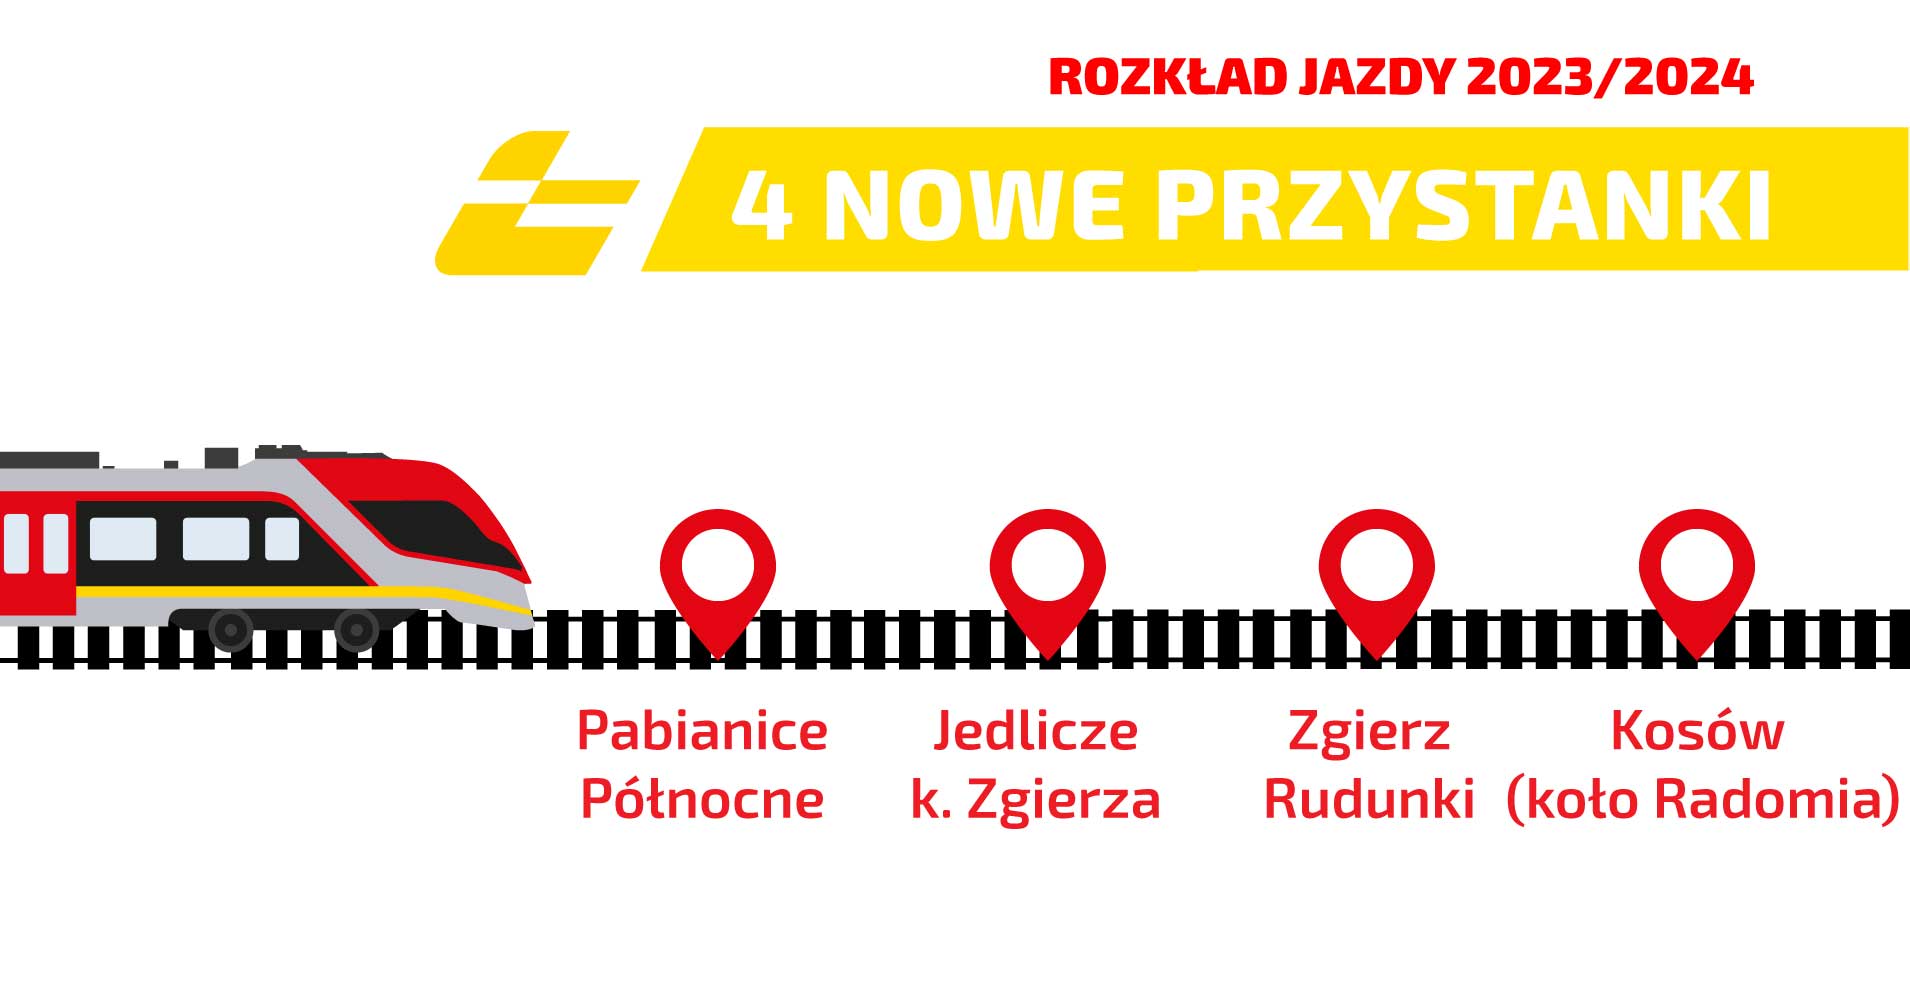 Grafika z napisem 4 nowe przystanki: Pabianice Północ, Jedlicze k. Zgierza, Zgierz Rudunki oraz Kosó koło Radomia. 